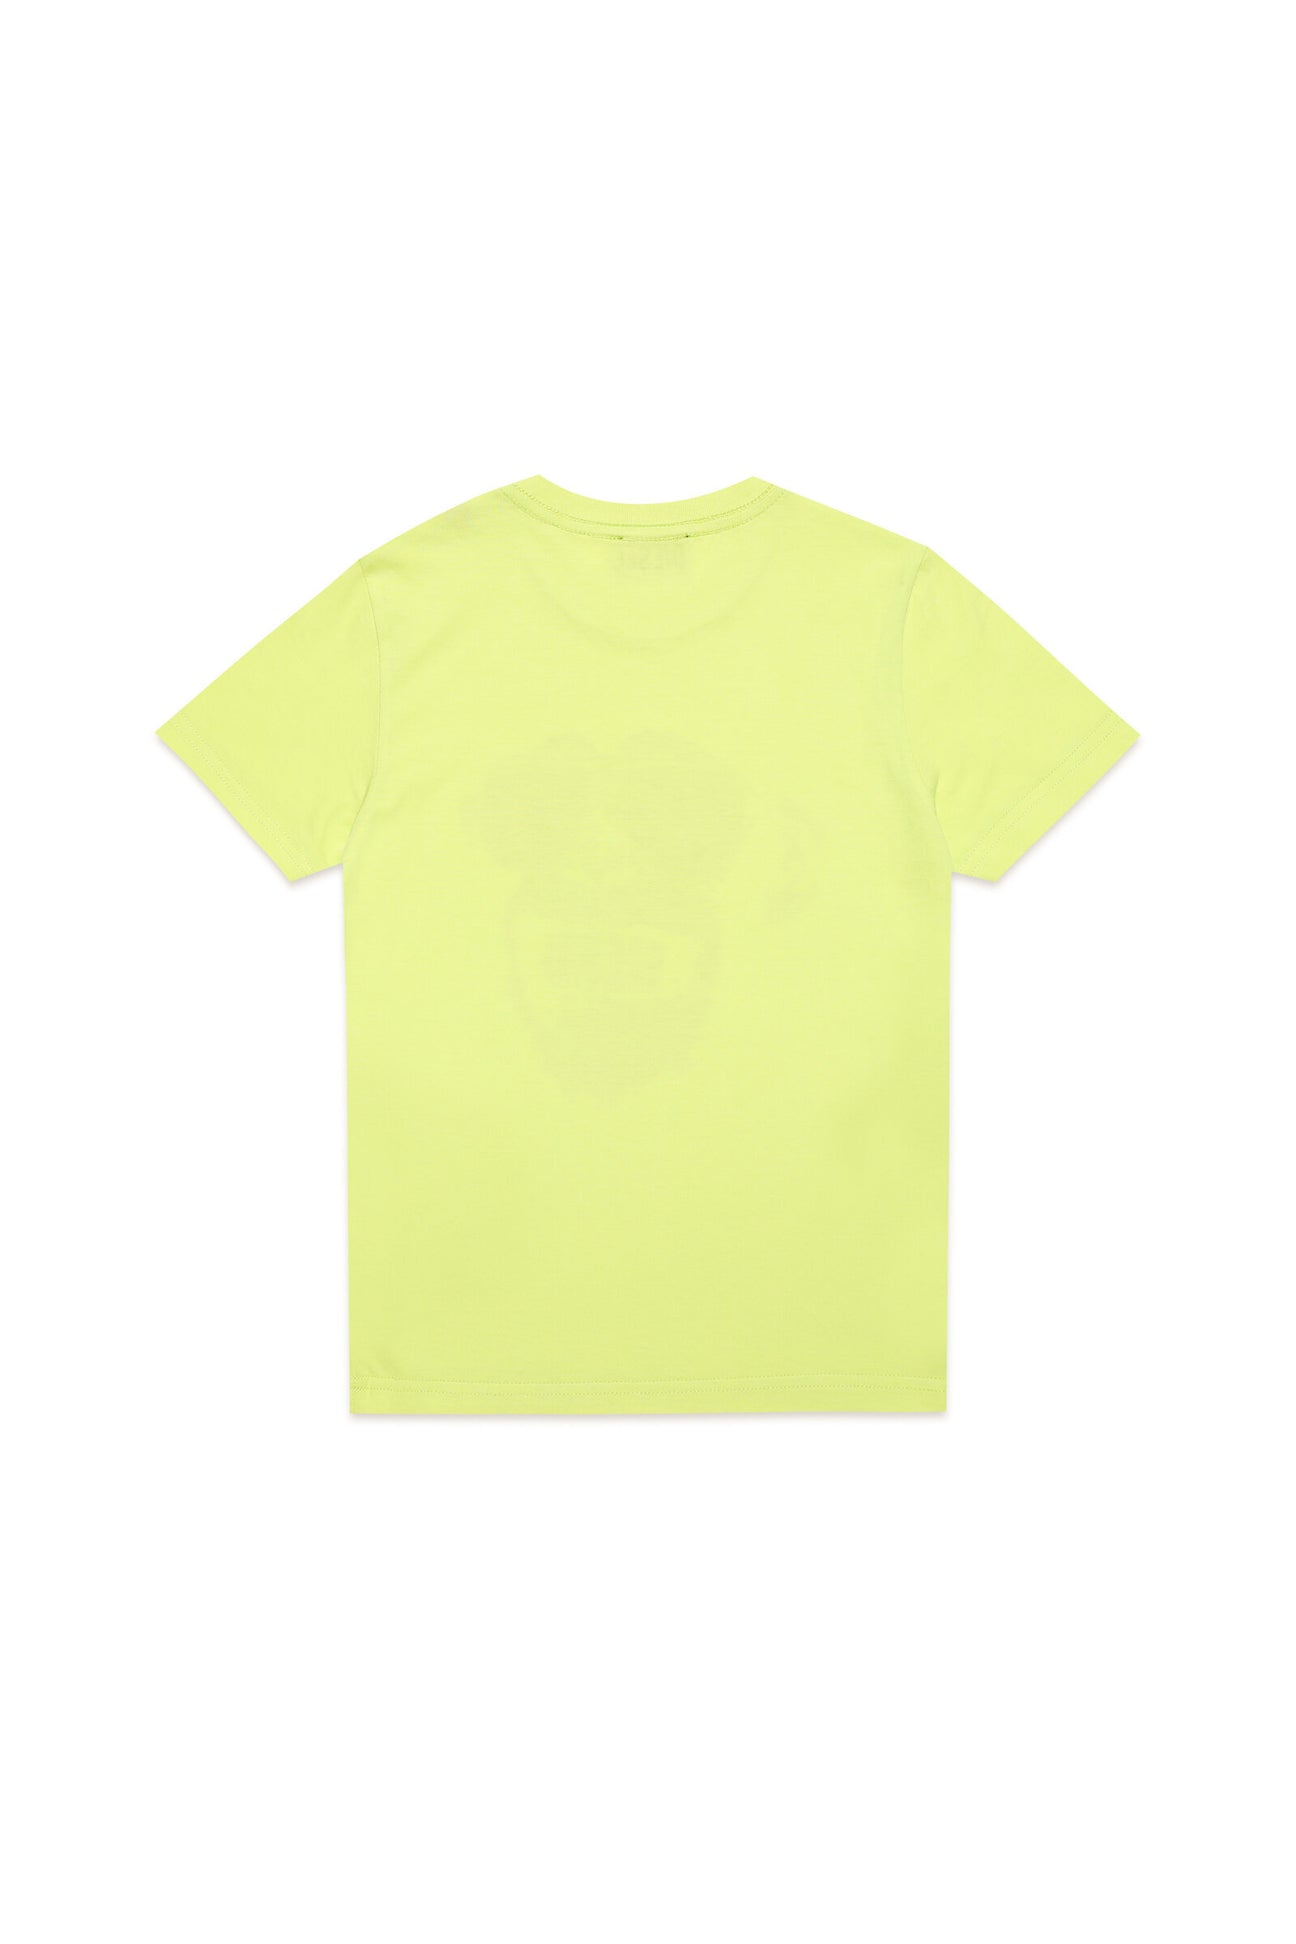 Camiseta amarilla con estampado Monkey de efecto metálico Camiseta amarilla con estampado Monkey de efecto metálico